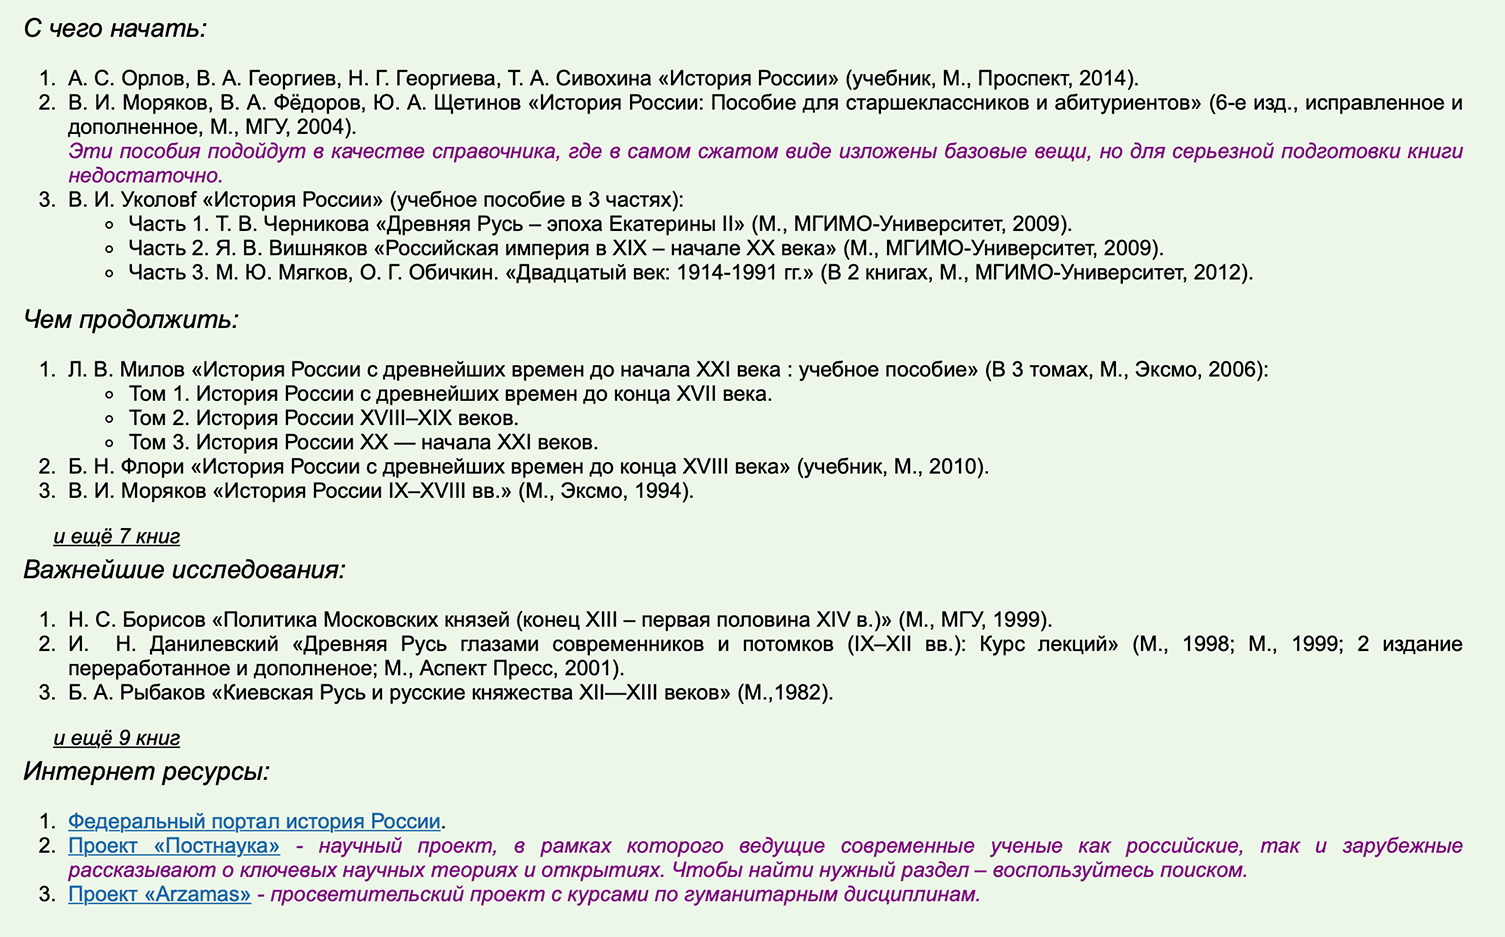 А вот так выглядят рекомендации по подготовке к Всеросу по истории на сайтах для олимпиадников. Источник: olimpiada.ru